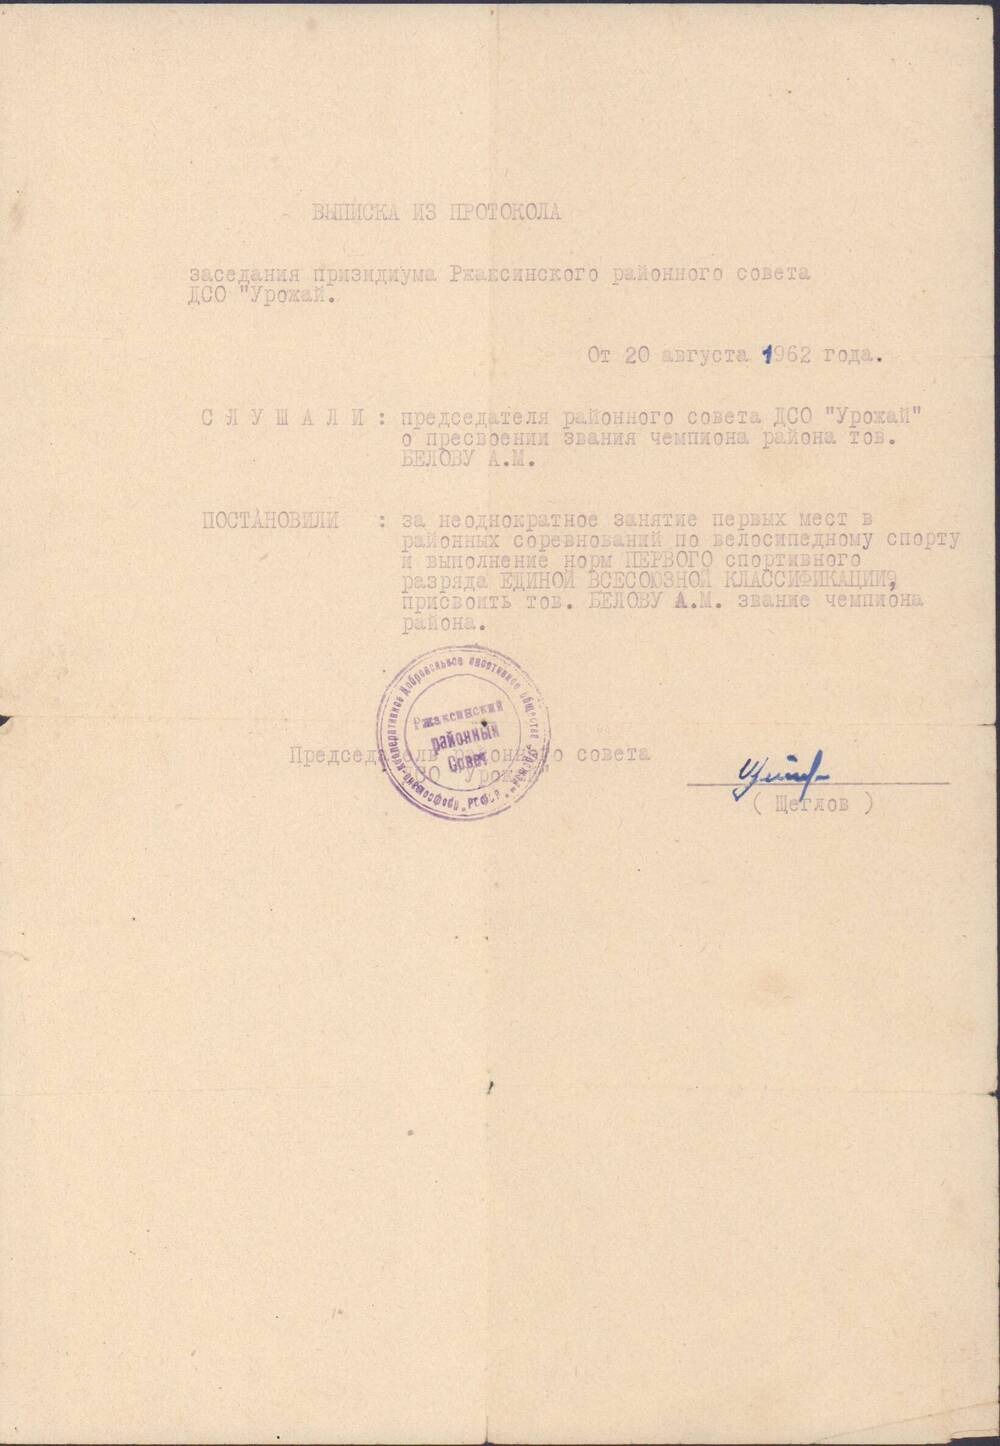 Выписка из протокола заседания президиума Ржаксинского районного совета ДСО Урожай, 1962 г